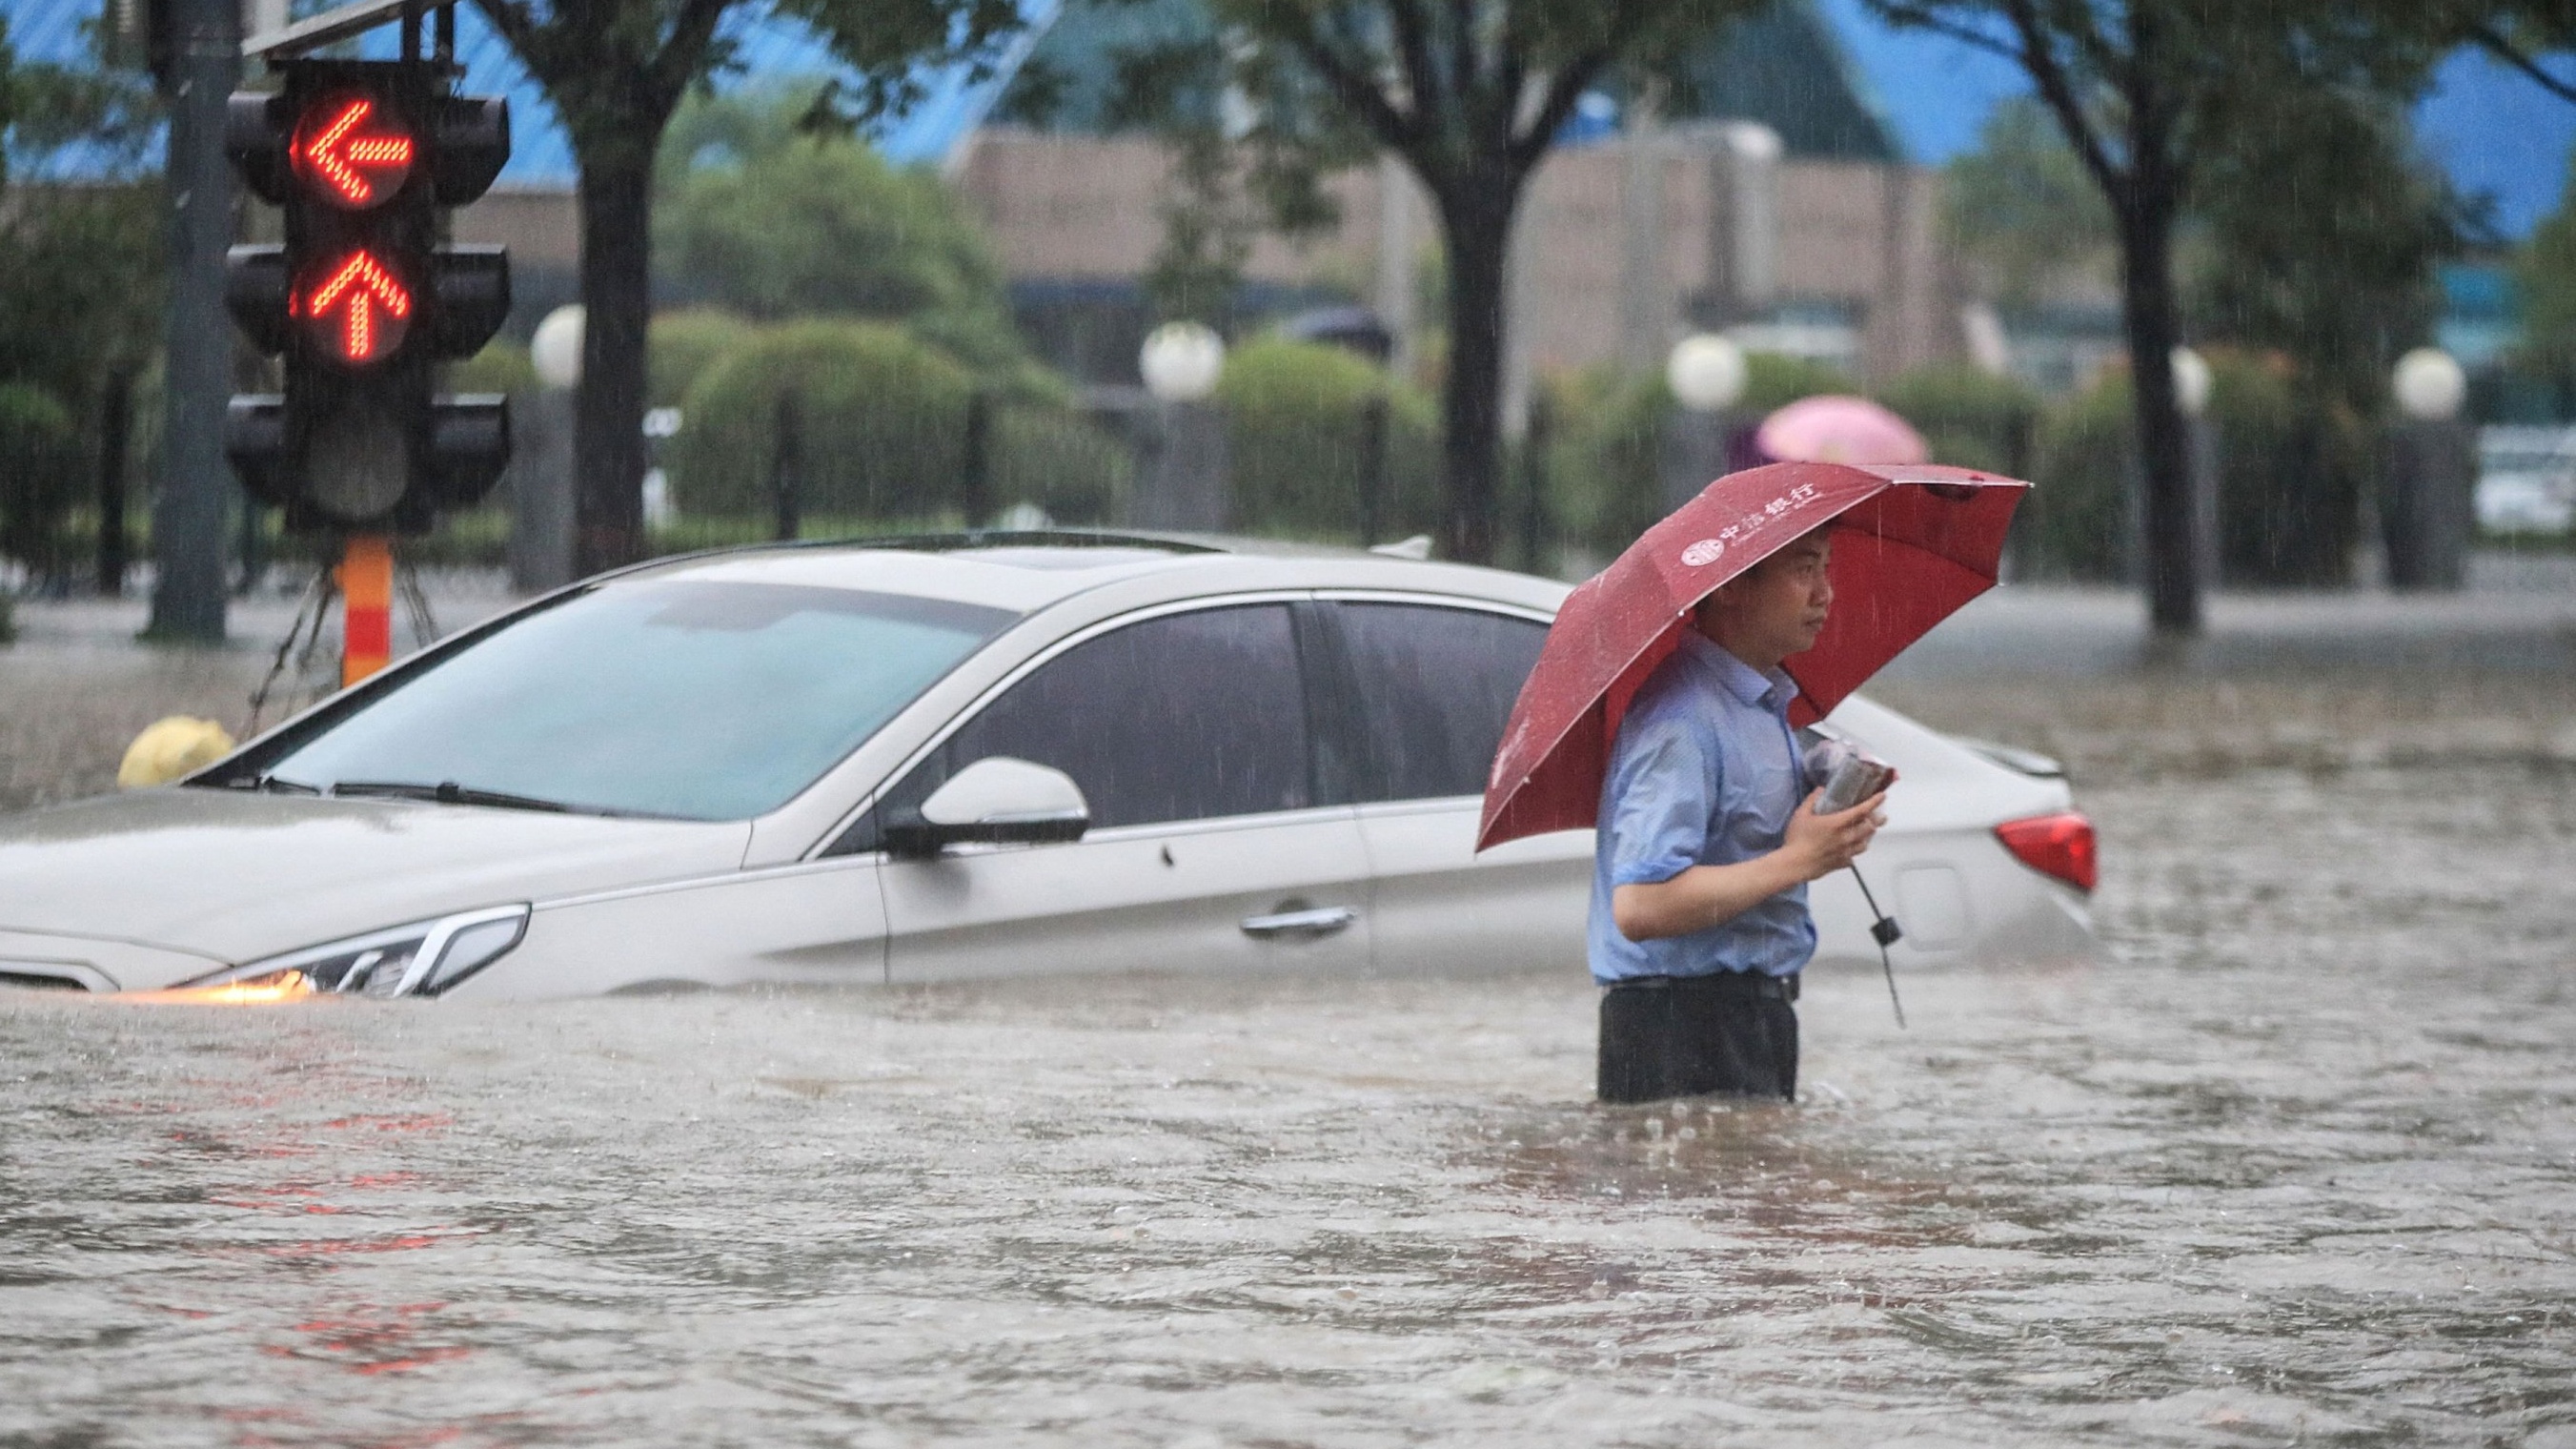 رجل يحاول عبور الطريق وبجانبه سيارته العالقة وسط المياه في مدينة تشنغتشو في الصين بتاريخ 21 تموز/يوليو 2021